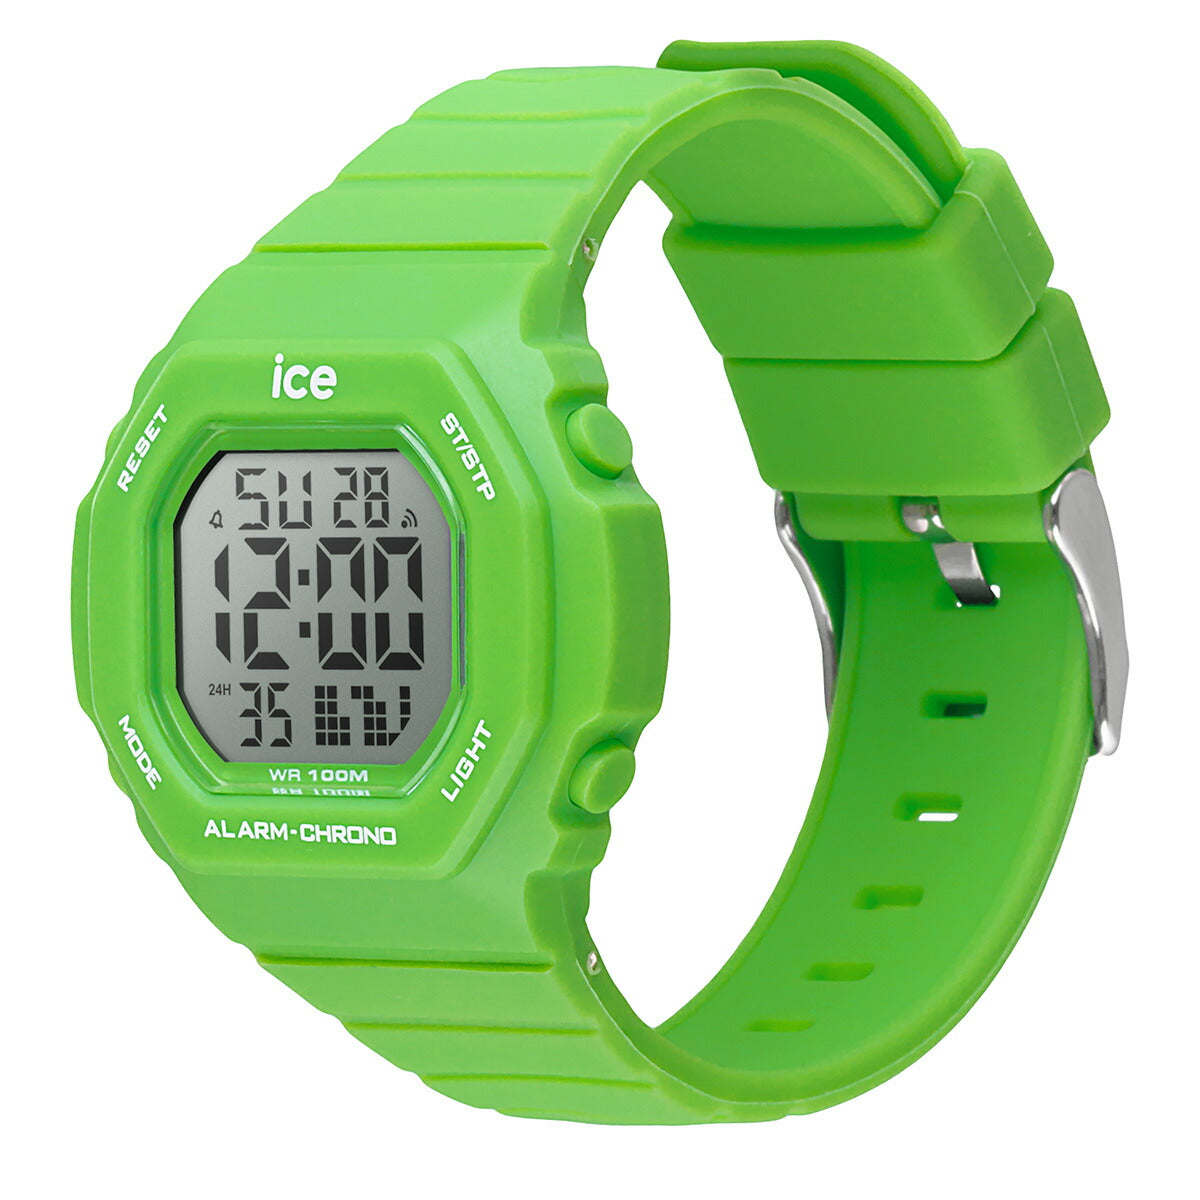 アイスウォッチ ICE-WATCH 腕時計 メンズ レディース アイスデジット ウルトラ ICE digit ultra グリーン 022097